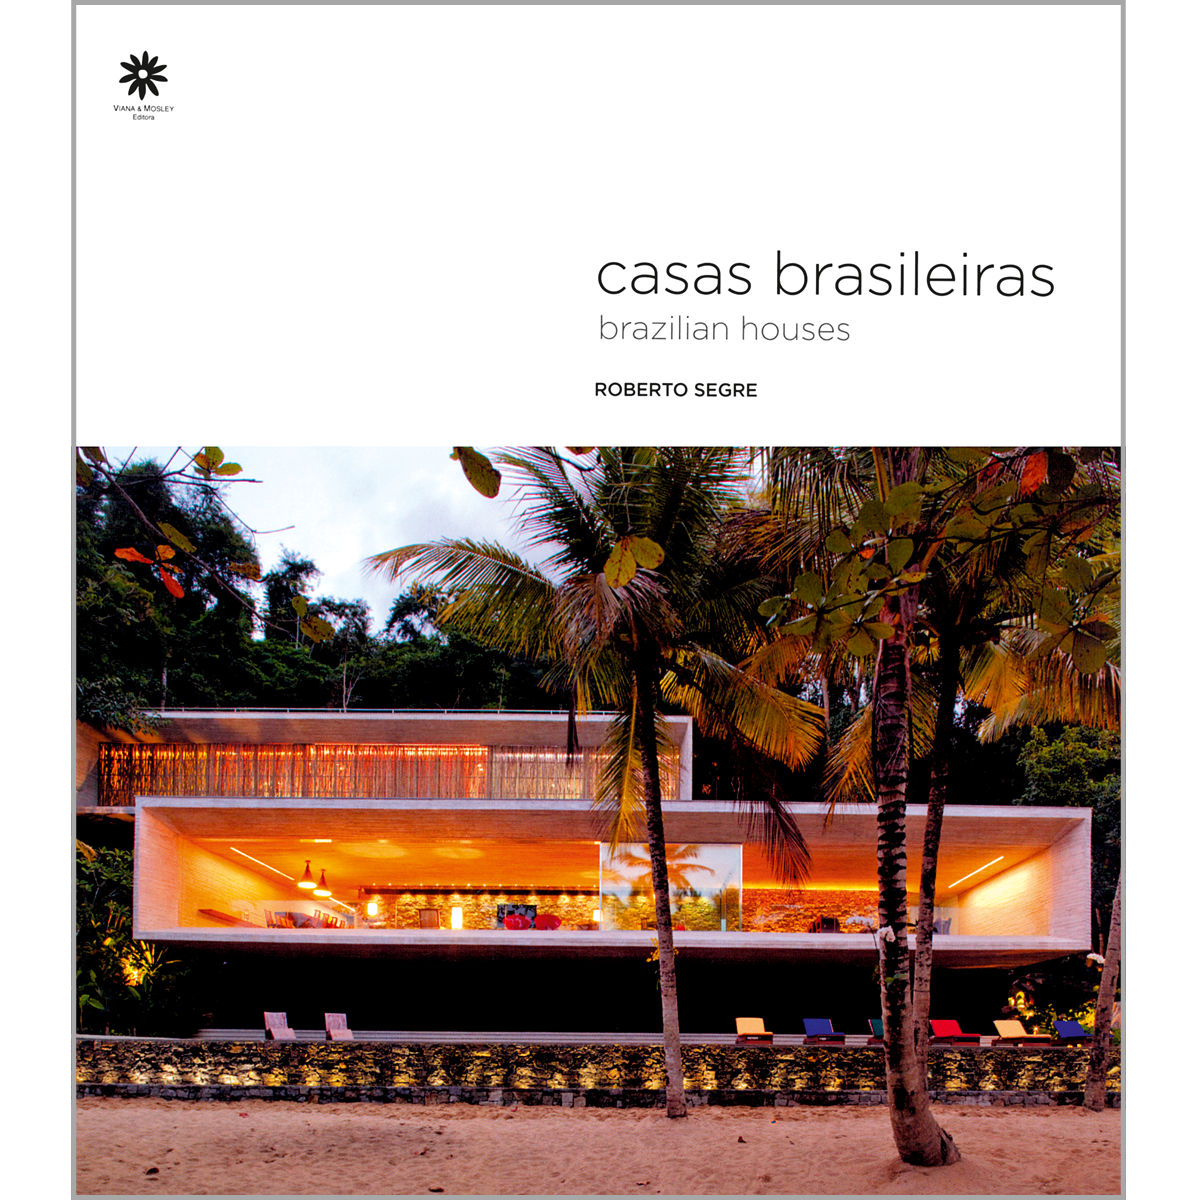 Casas brasileiras